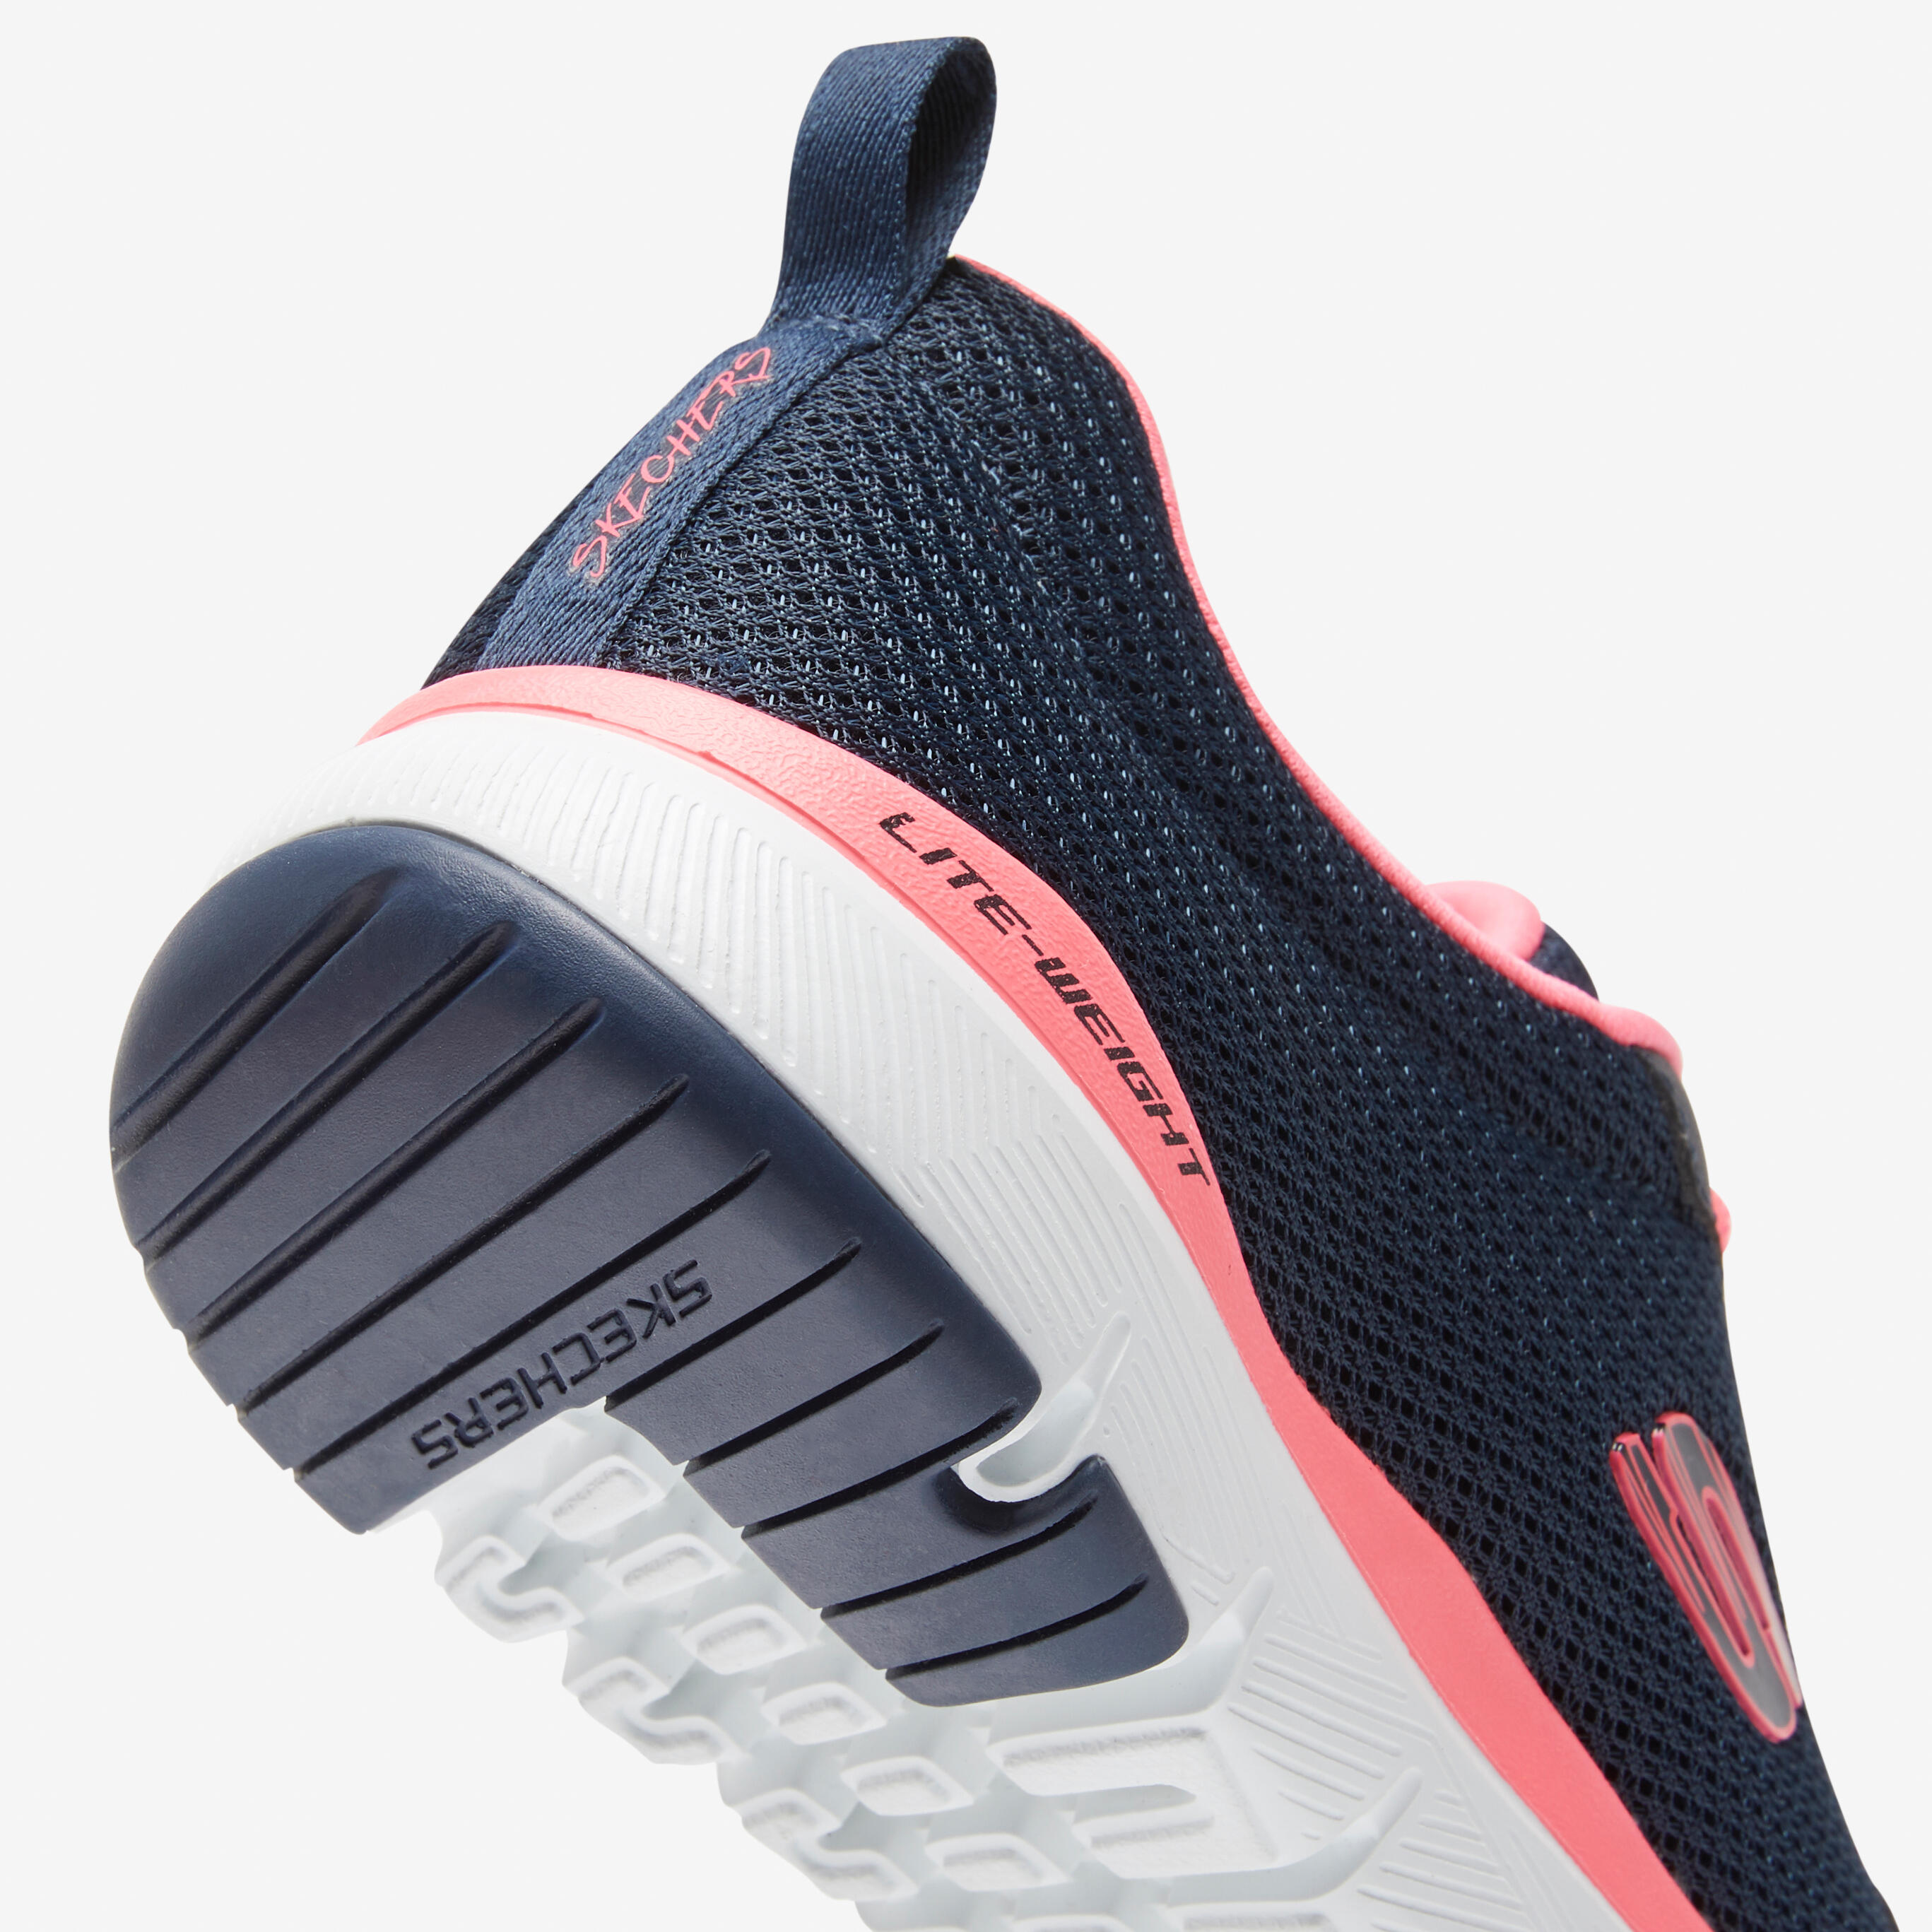 Flex Appeal Women's Fitness Walking Shoes - Blue/Pink 3/7